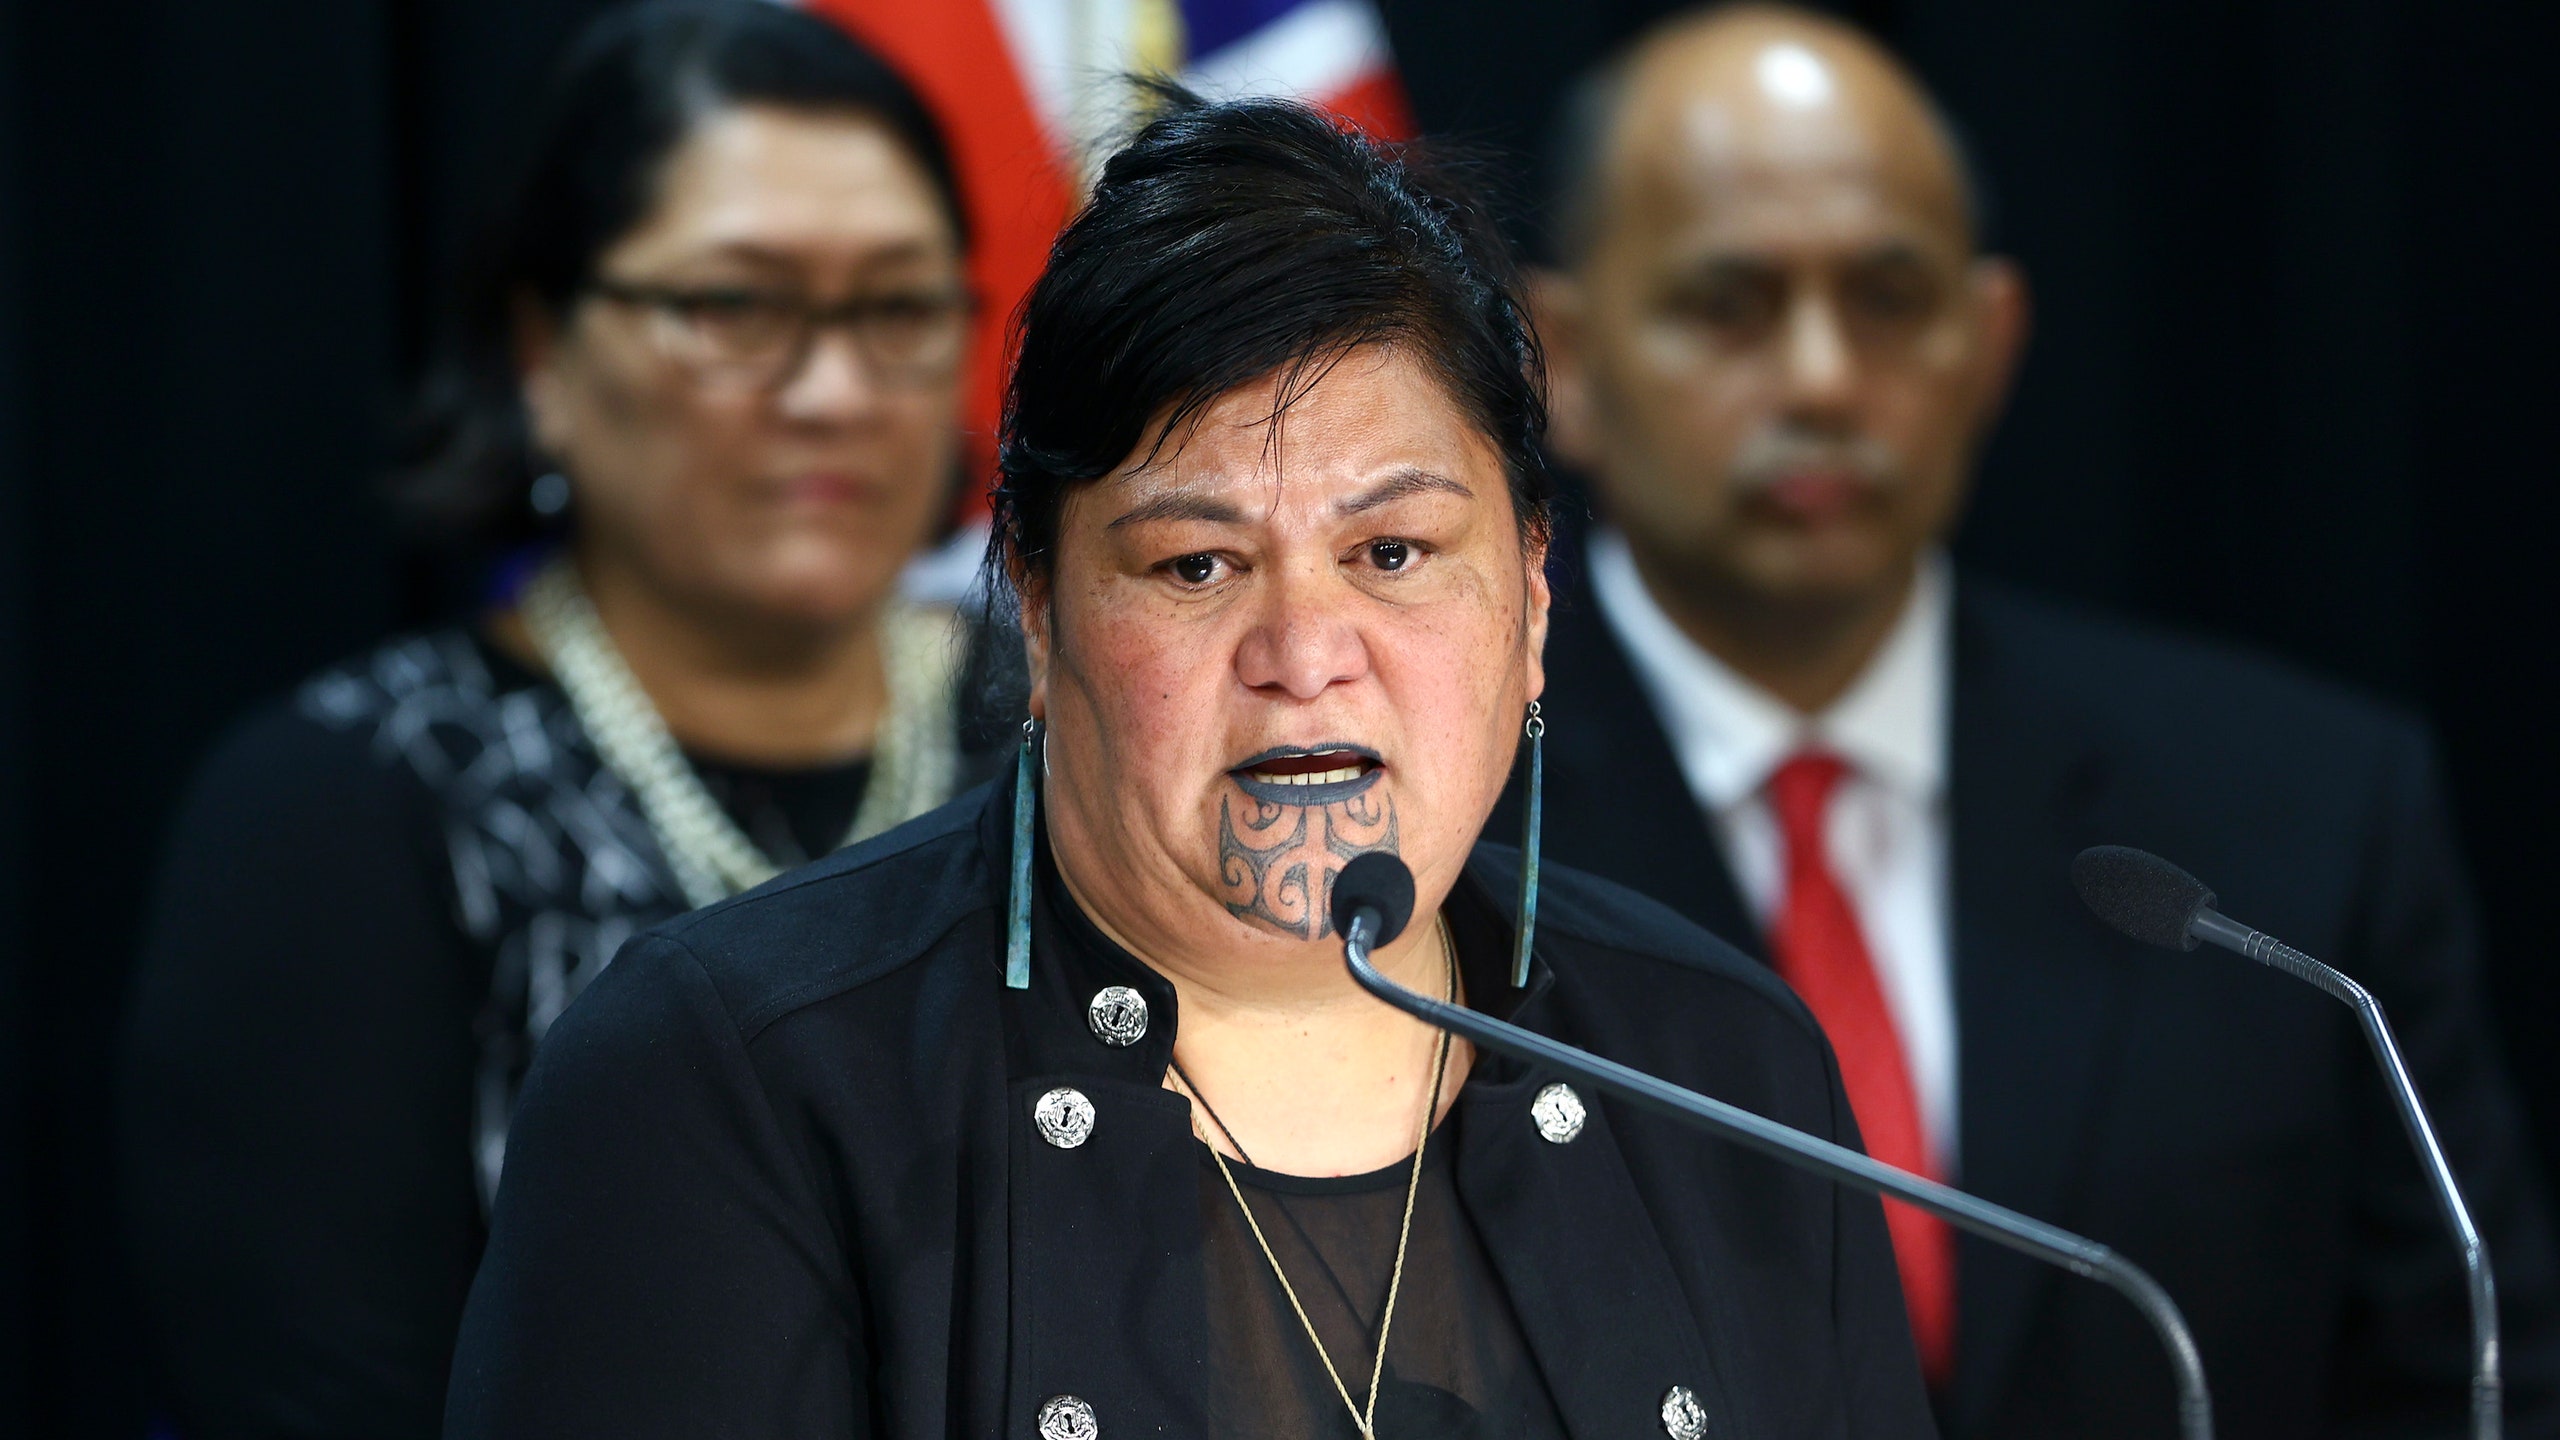 МИД Новой Зеландии впервые возглавила женщина — она из племени маори